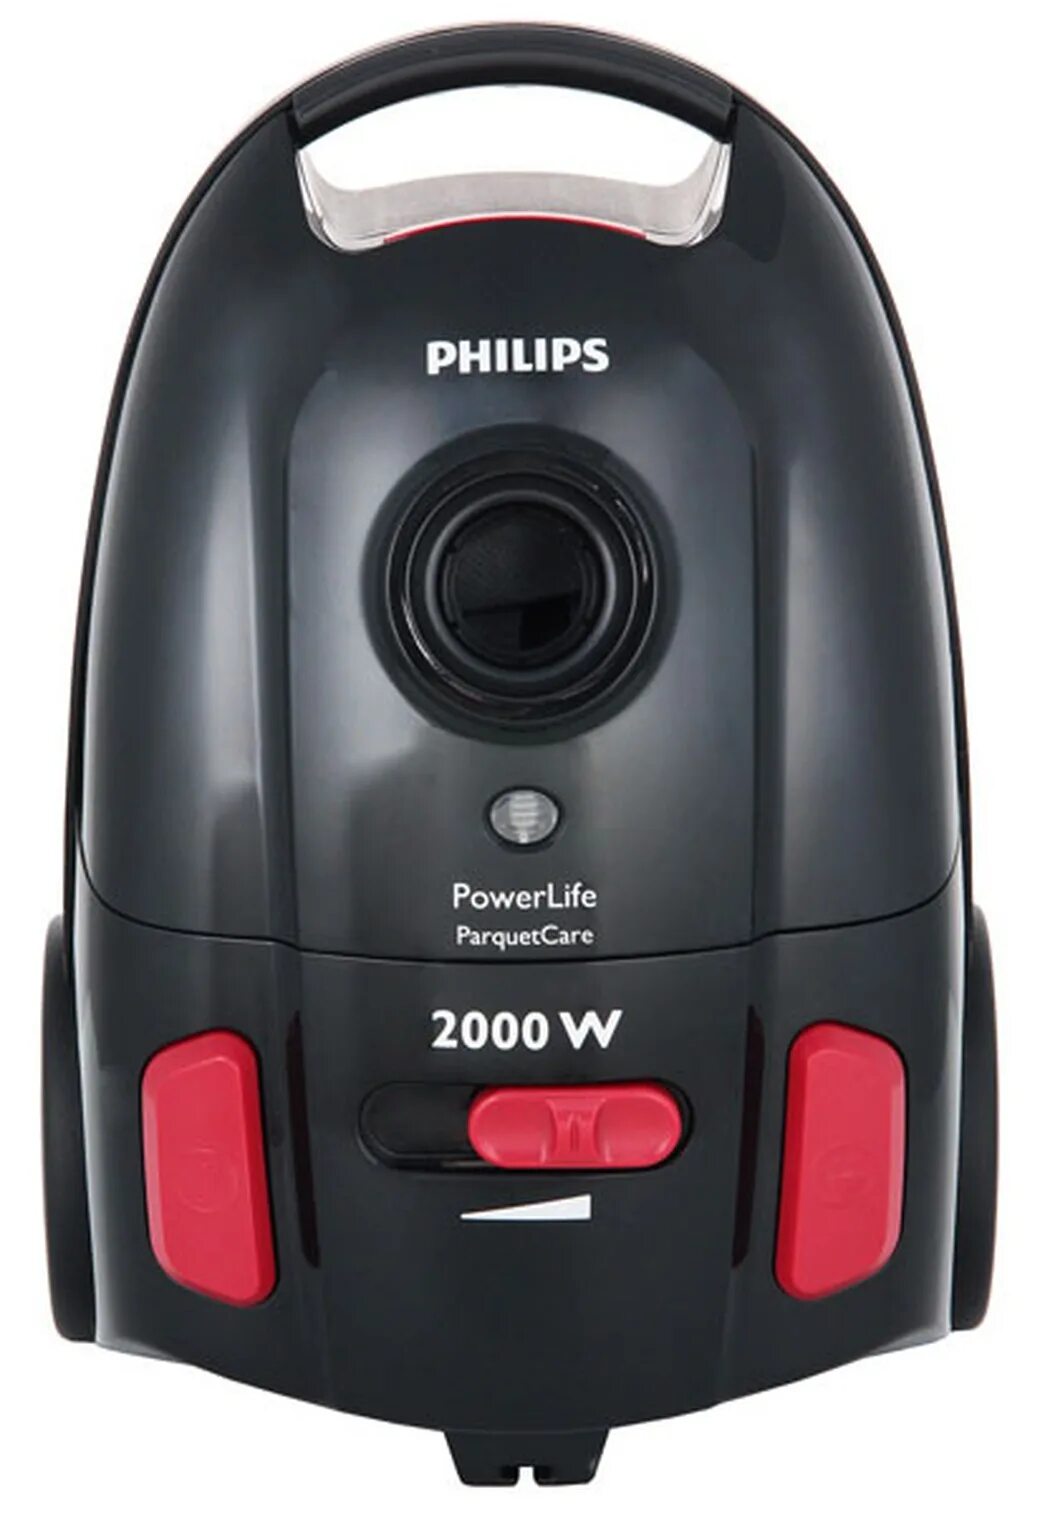 Пылесос Philips fc8454 POWERLIFE. Пылесос Philips 2000w. Пылесос Филипс 2000w. Fc8454 Philips.